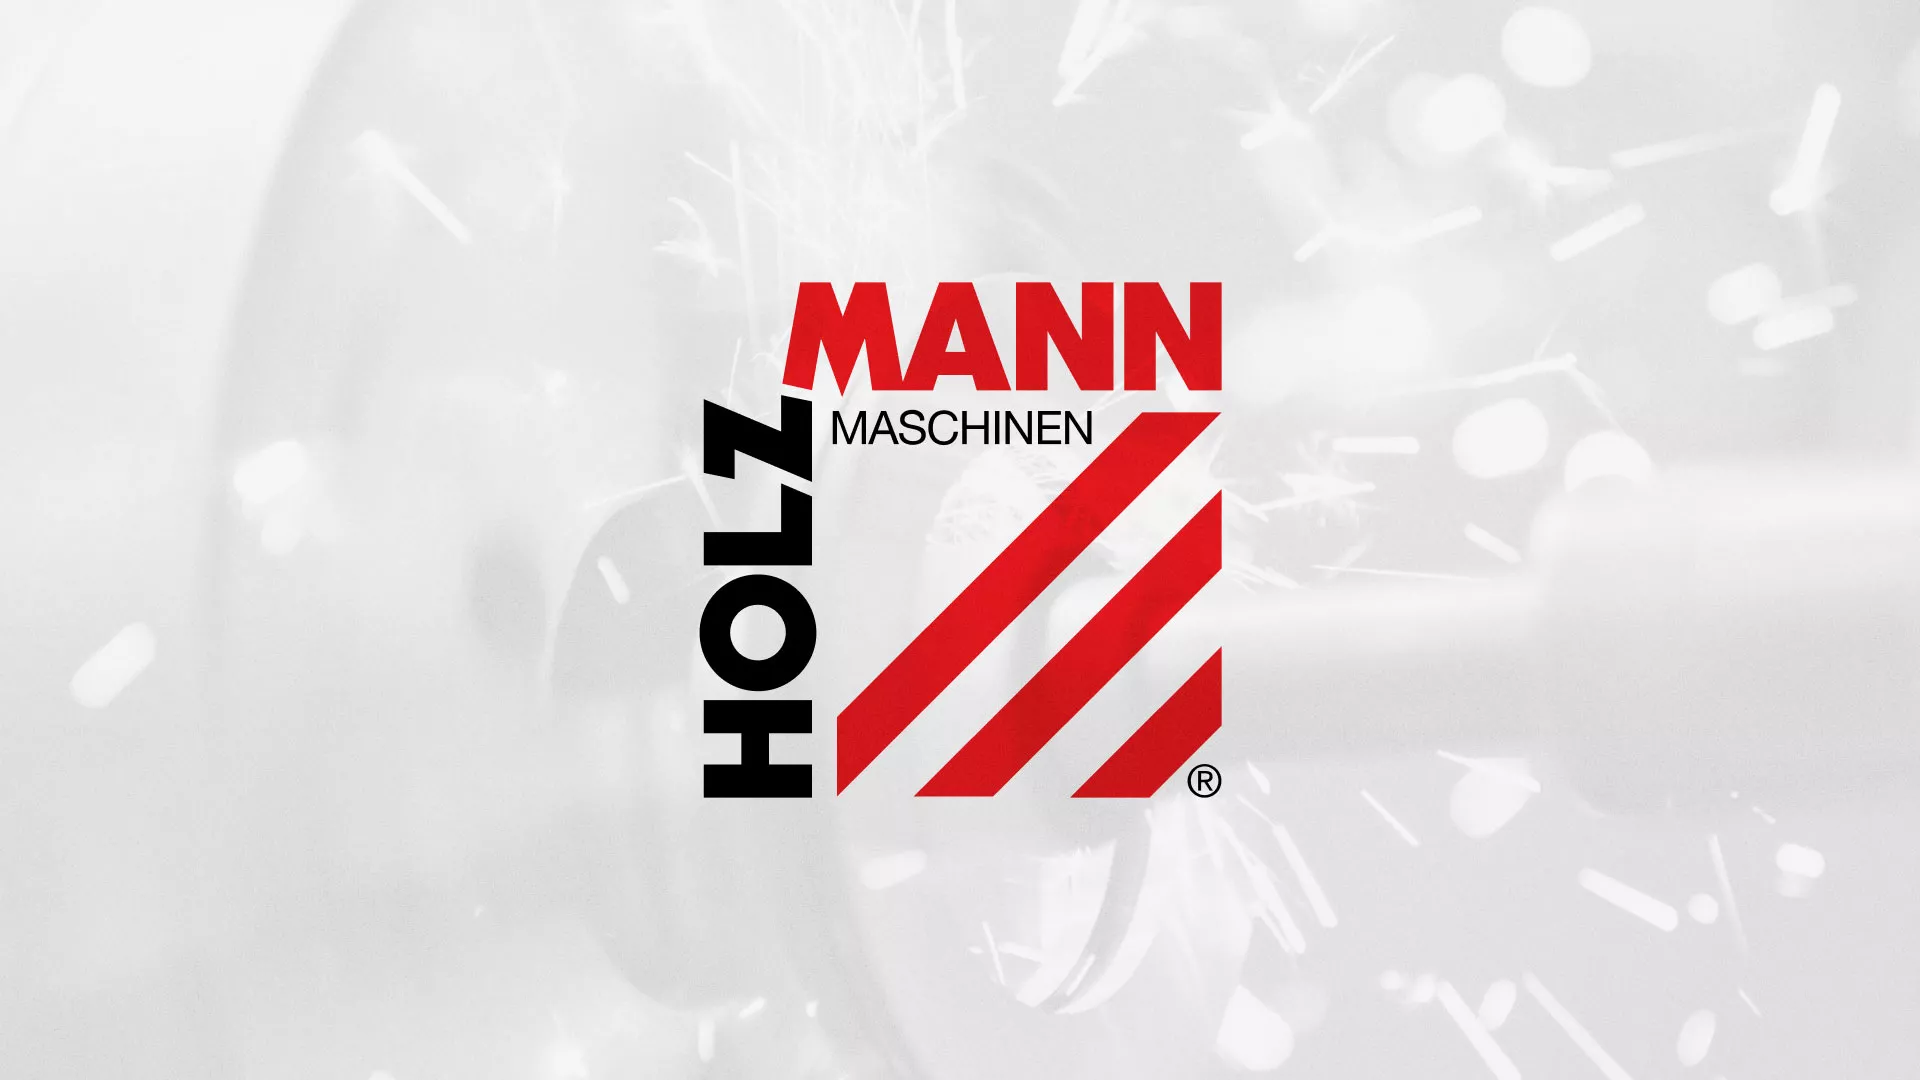 Создание сайта компании «HOLZMANN Maschinen GmbH» в Стародубе